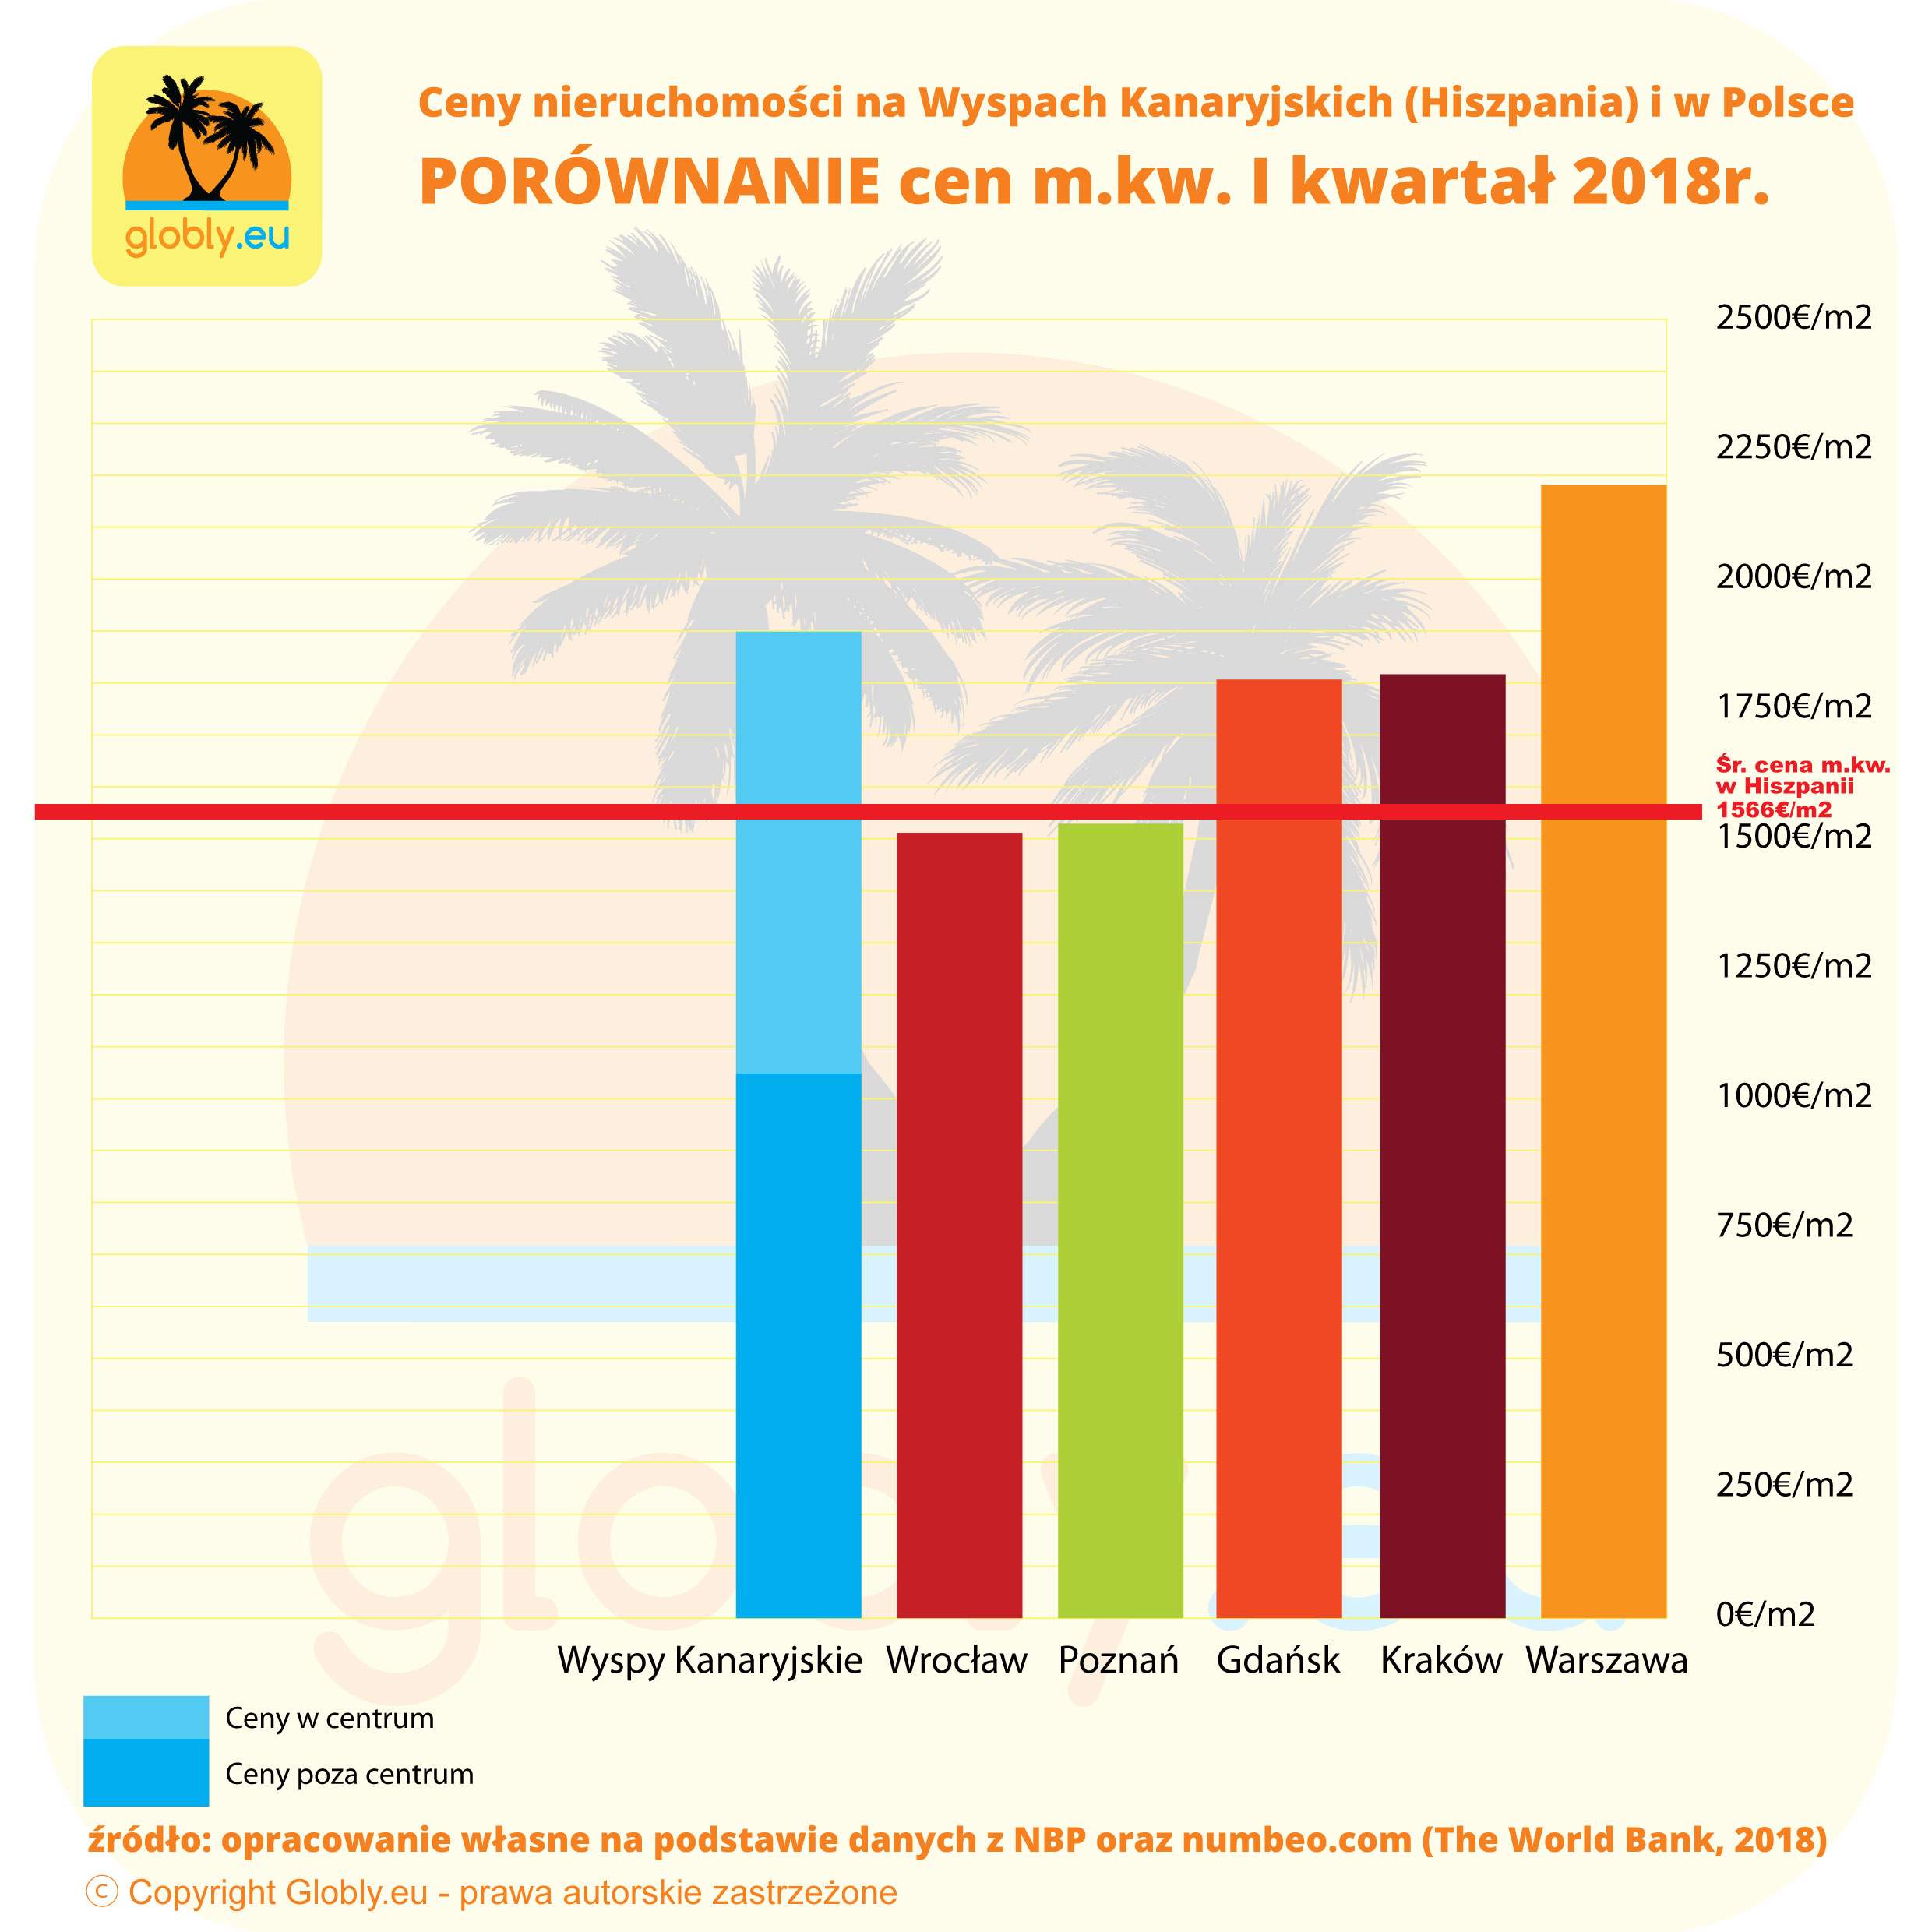 Ceny nieruchomości w Hiszpanii - Wyspy Kanaryjskie